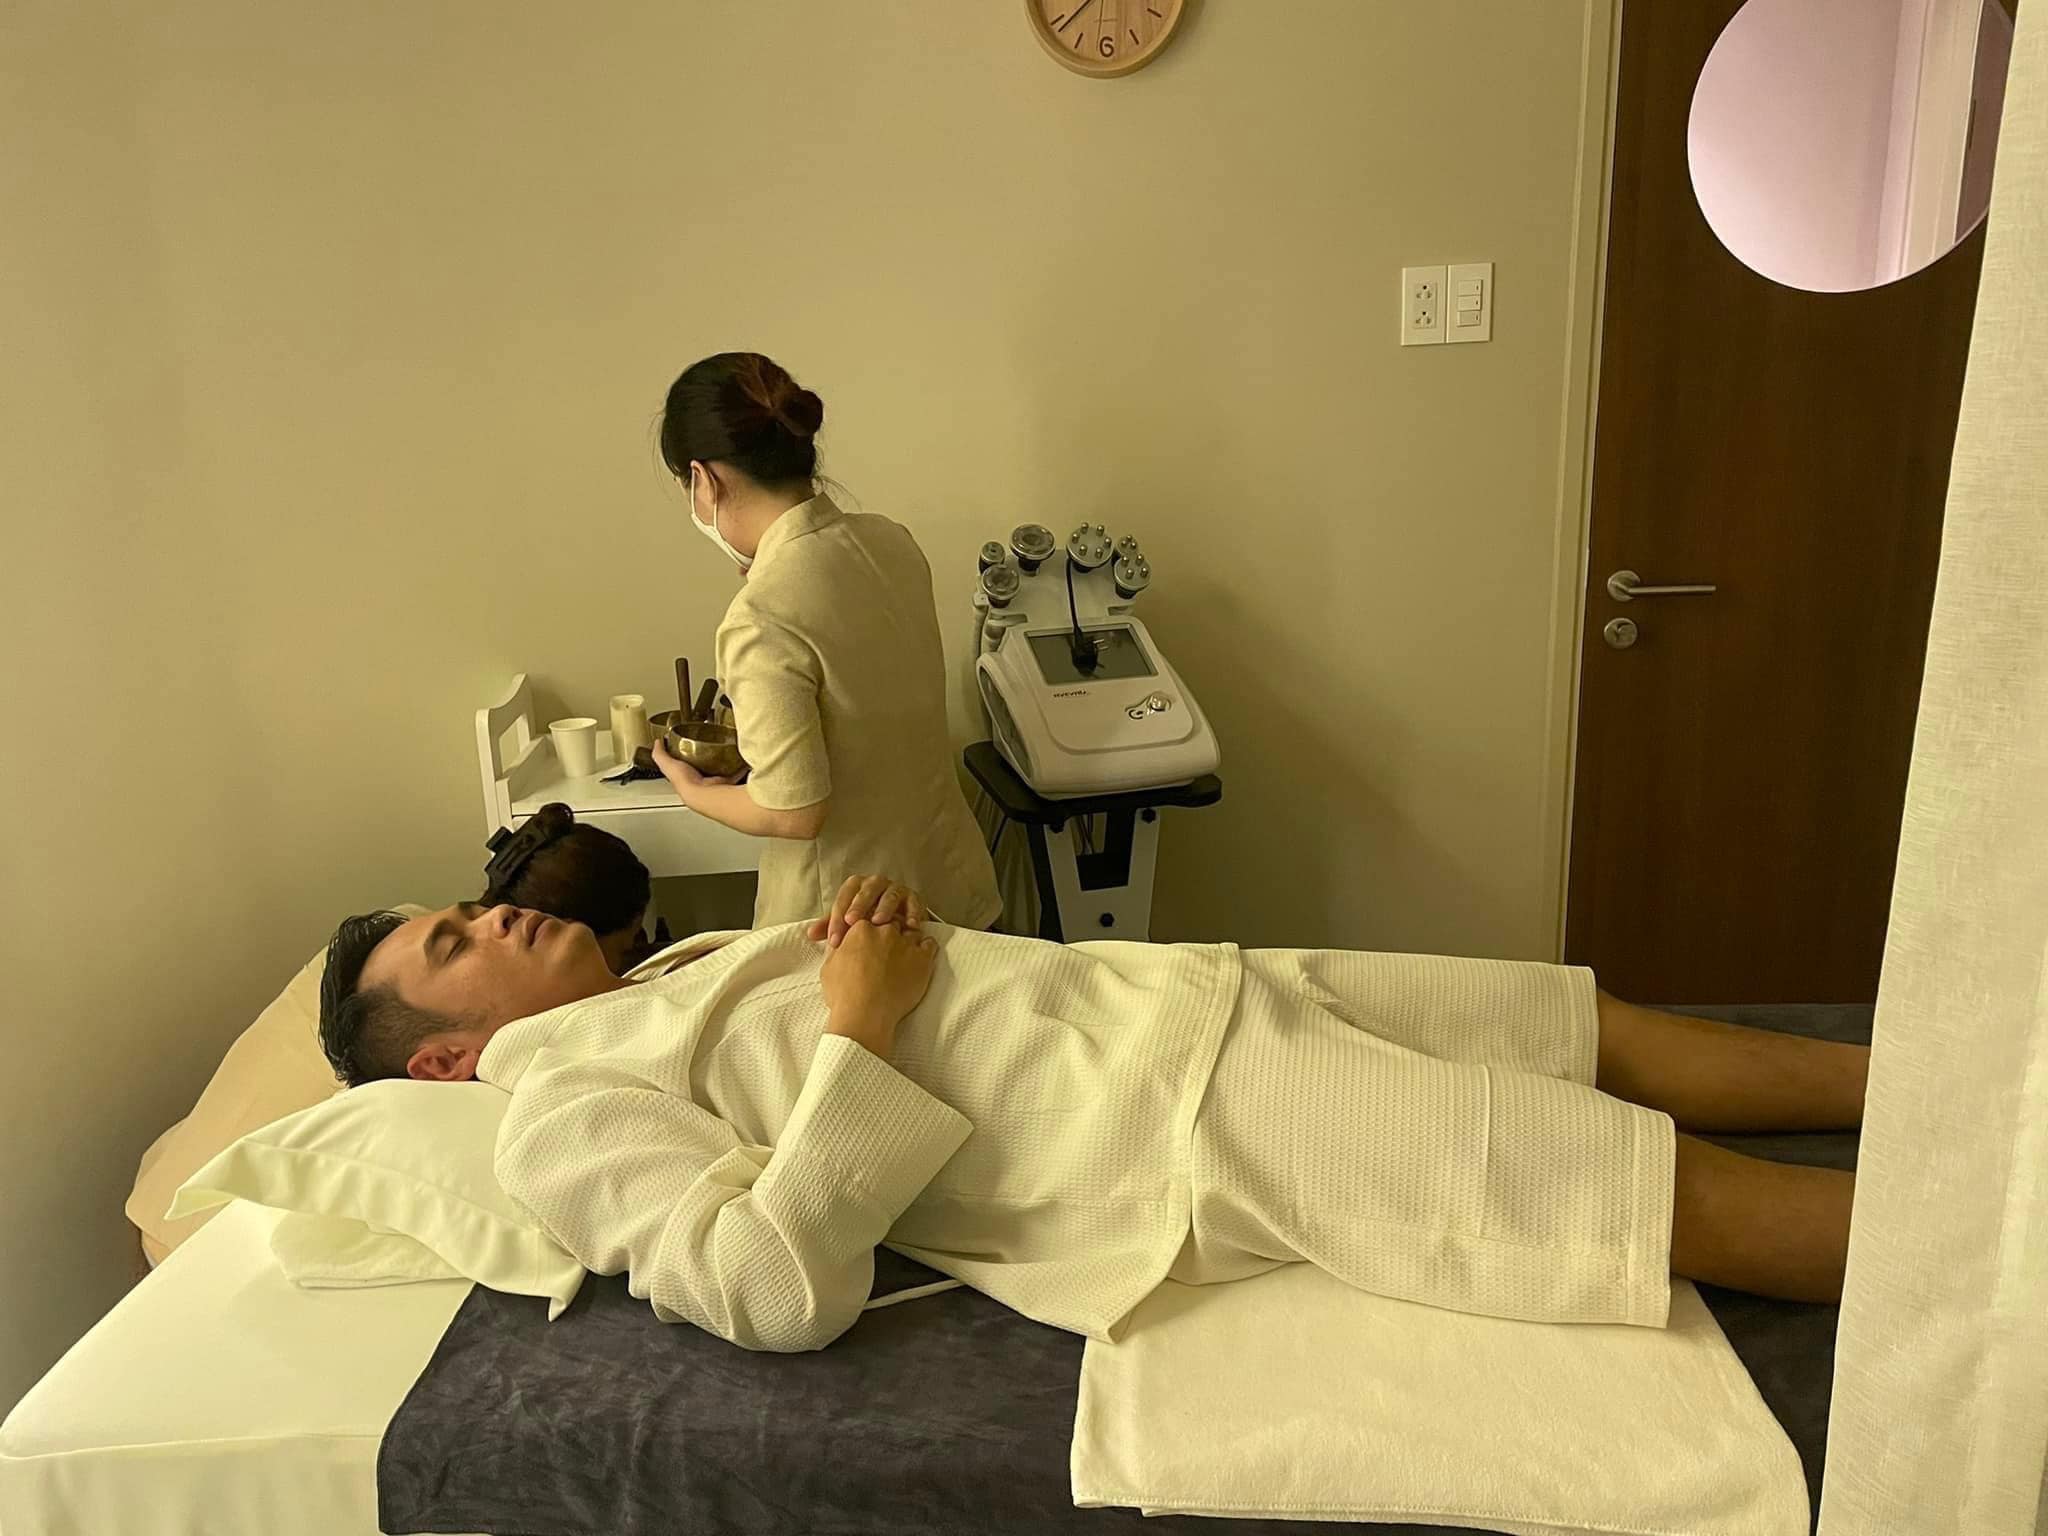 Massage trị liệu cho nam lành mạnh nào tốt, hiệu quả tại TPHCM?